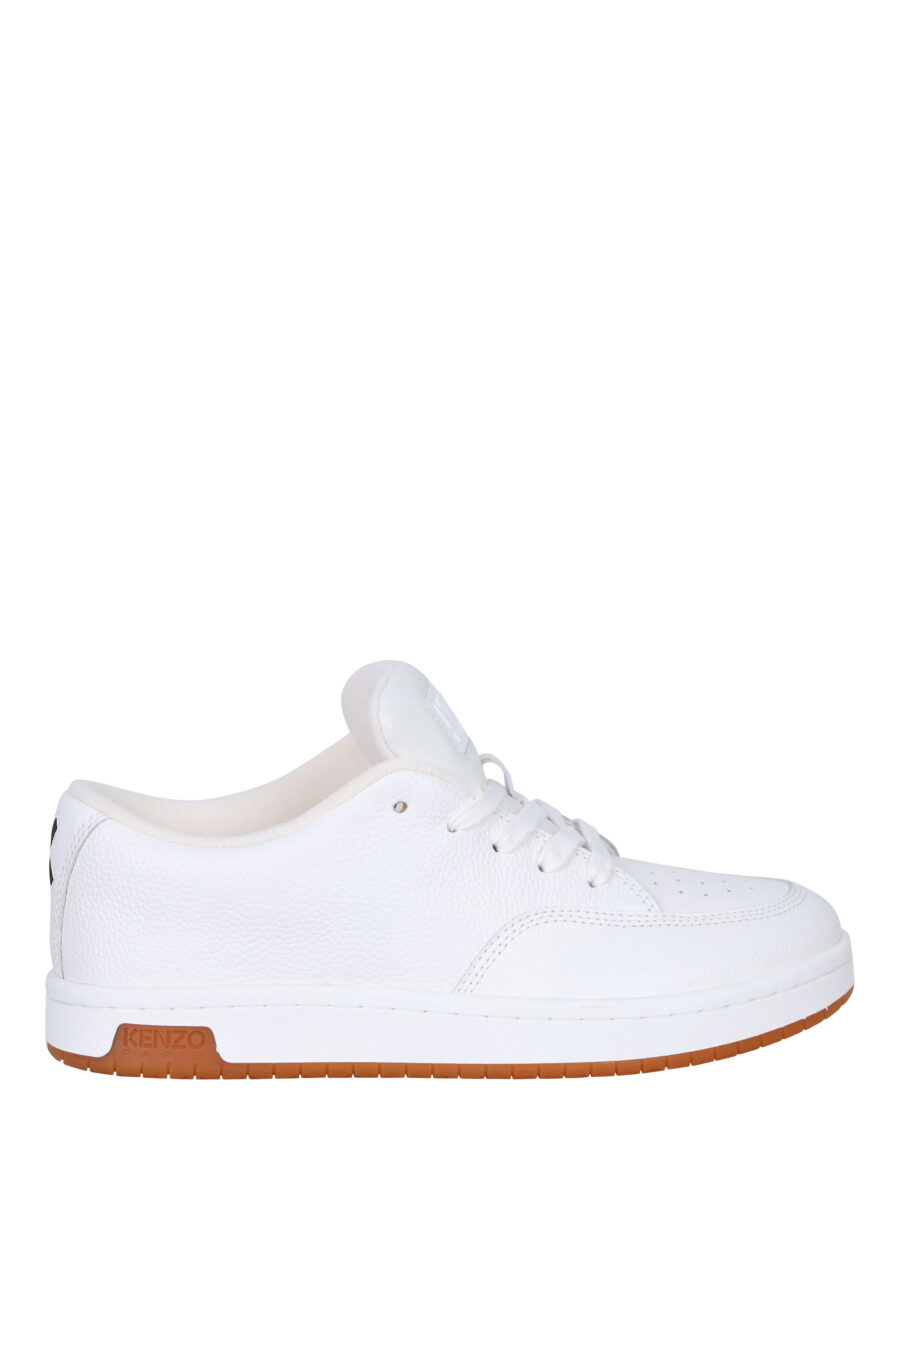 Zapatillas blancas "kenzo dome" con minilogo y suela marrón - 3612230556089